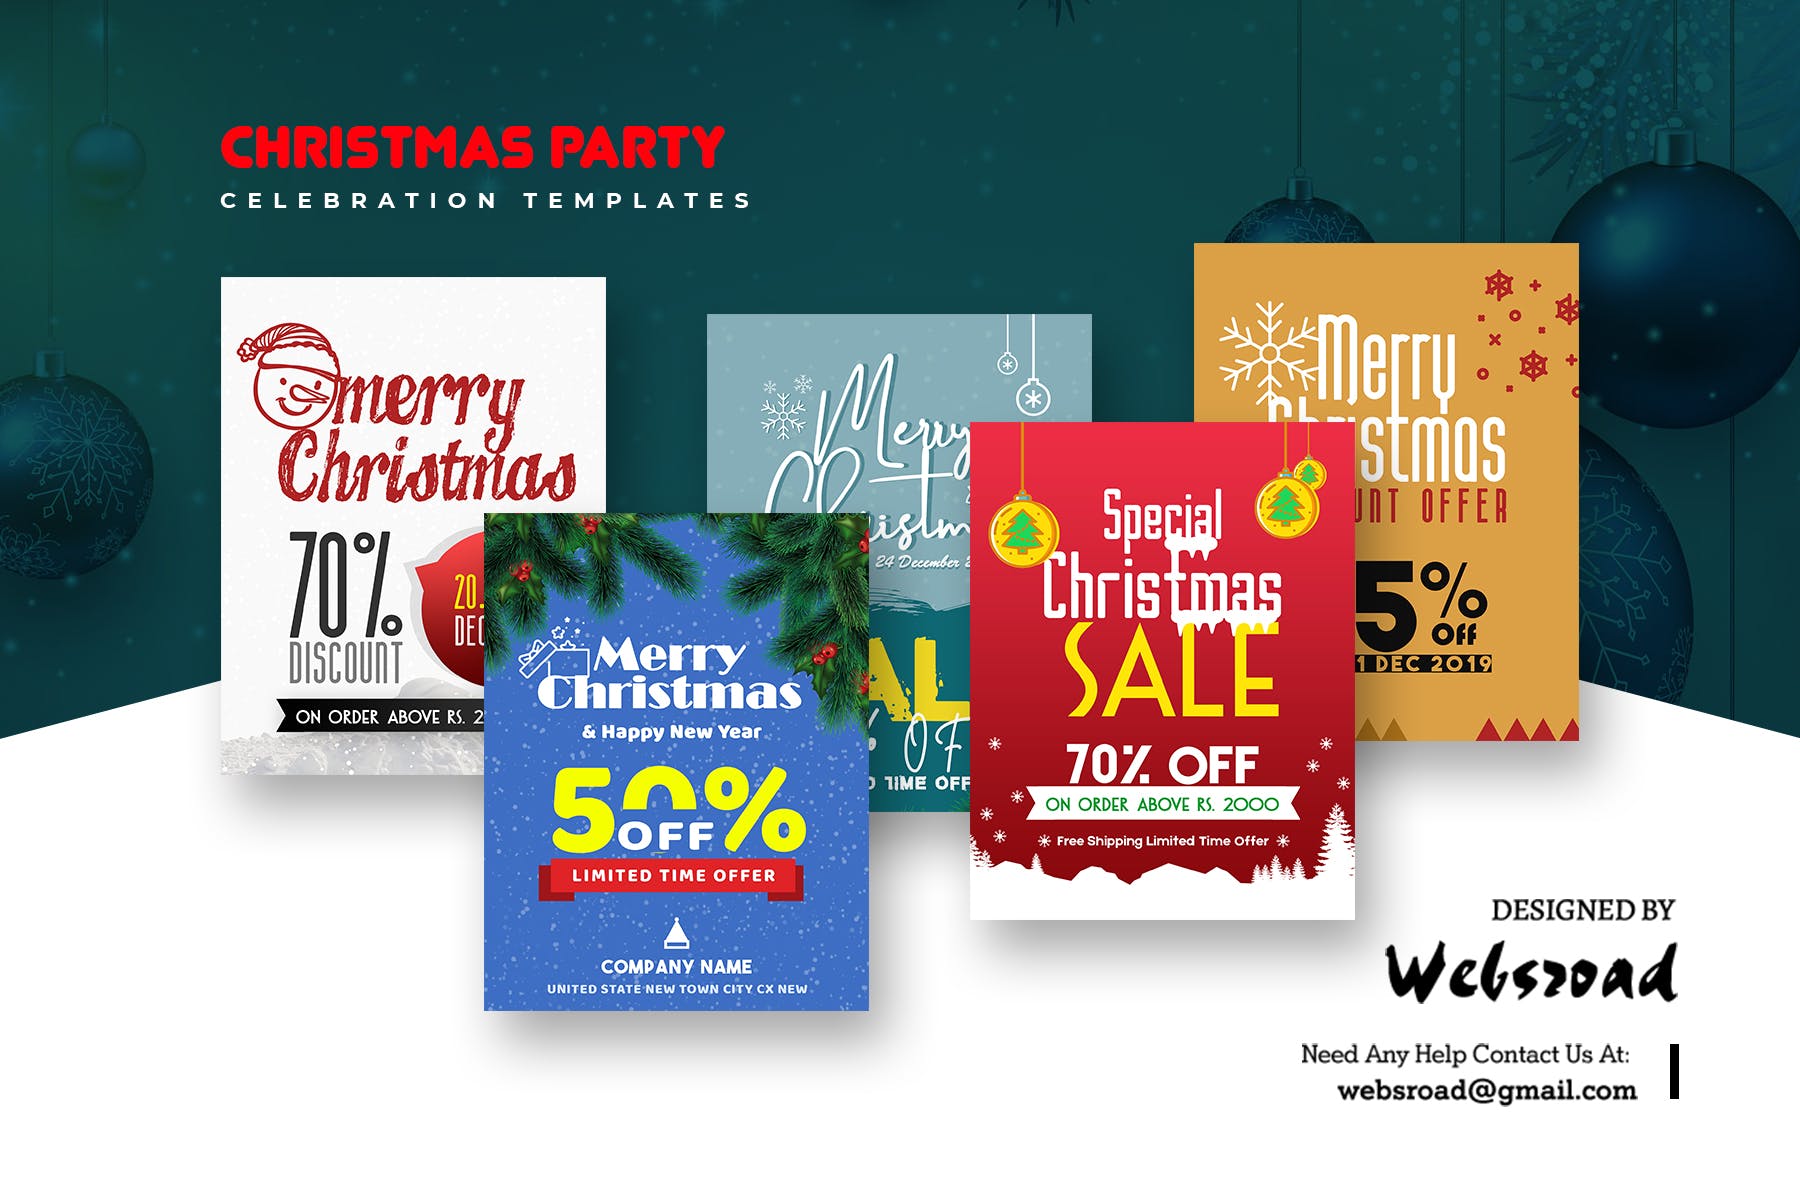 圣诞节主题促销活动非凡图库精选广告模板合集 Christmas Party Celebration Templates插图